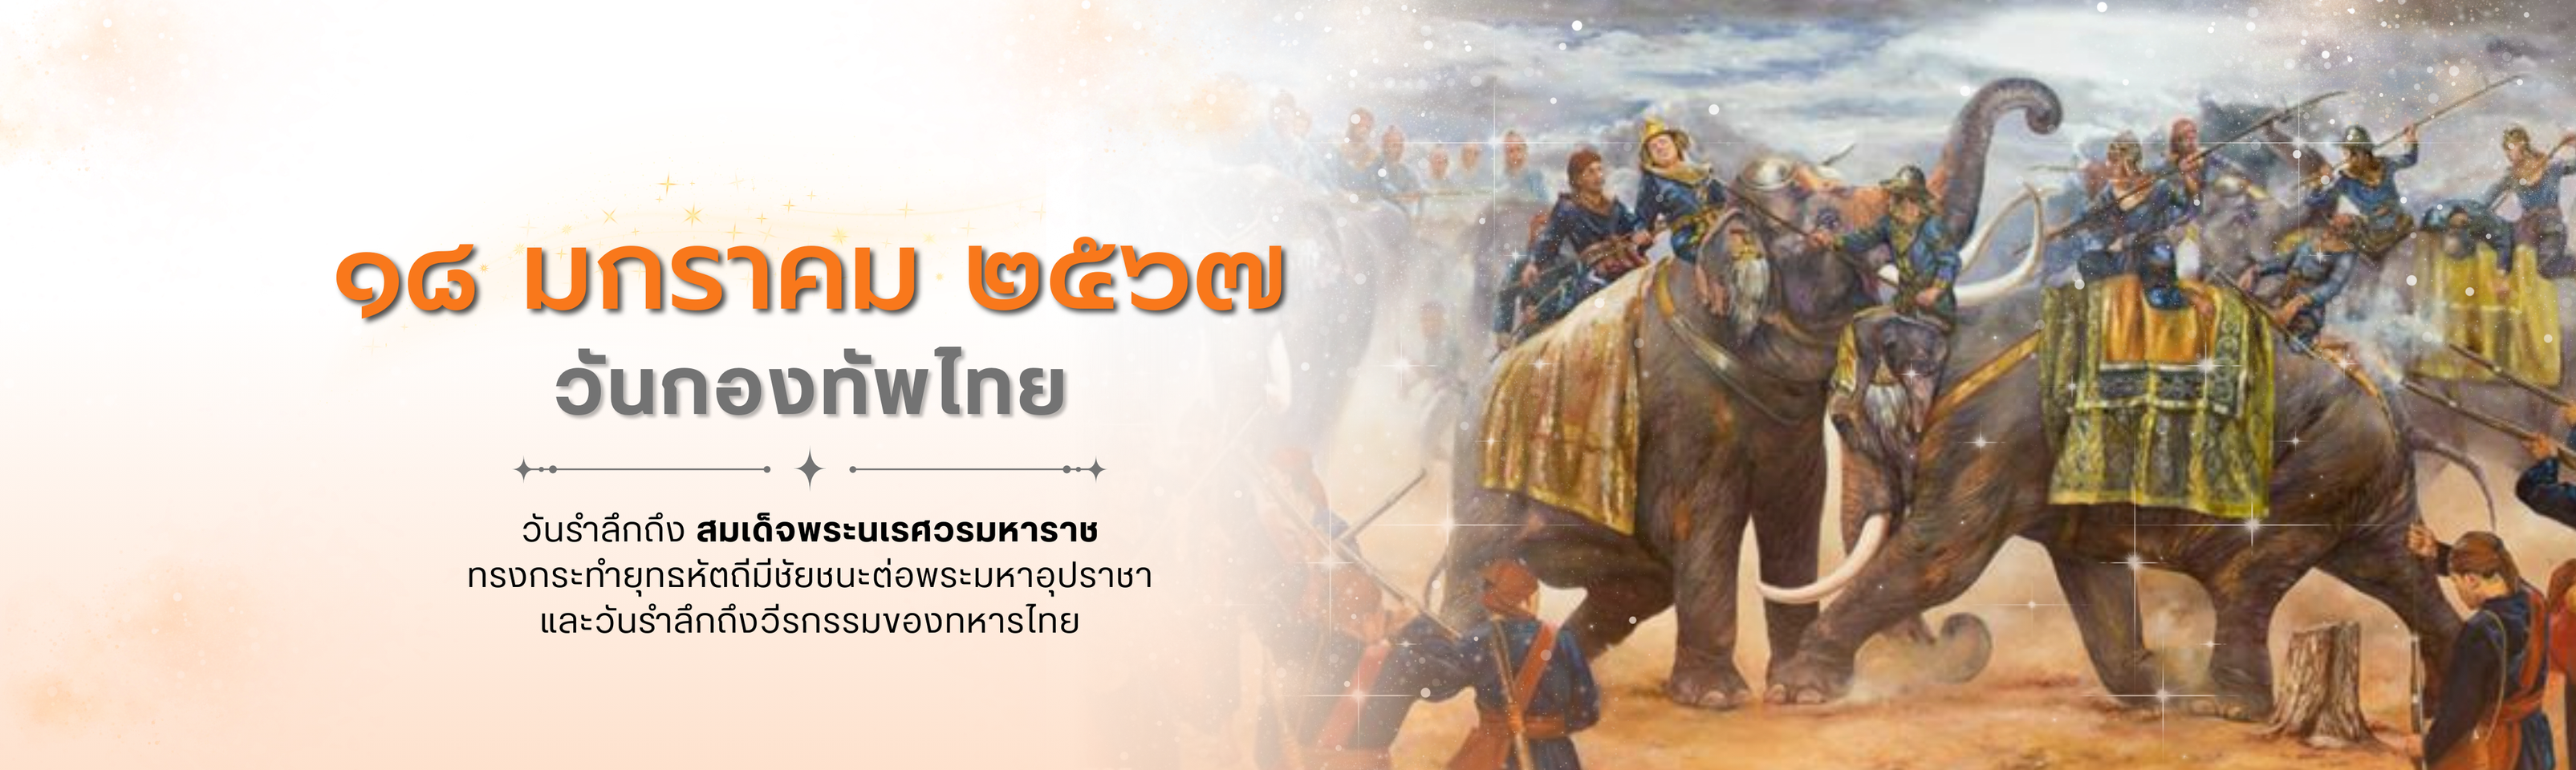 ๑๘ มกราคม วันกองทัพไทย